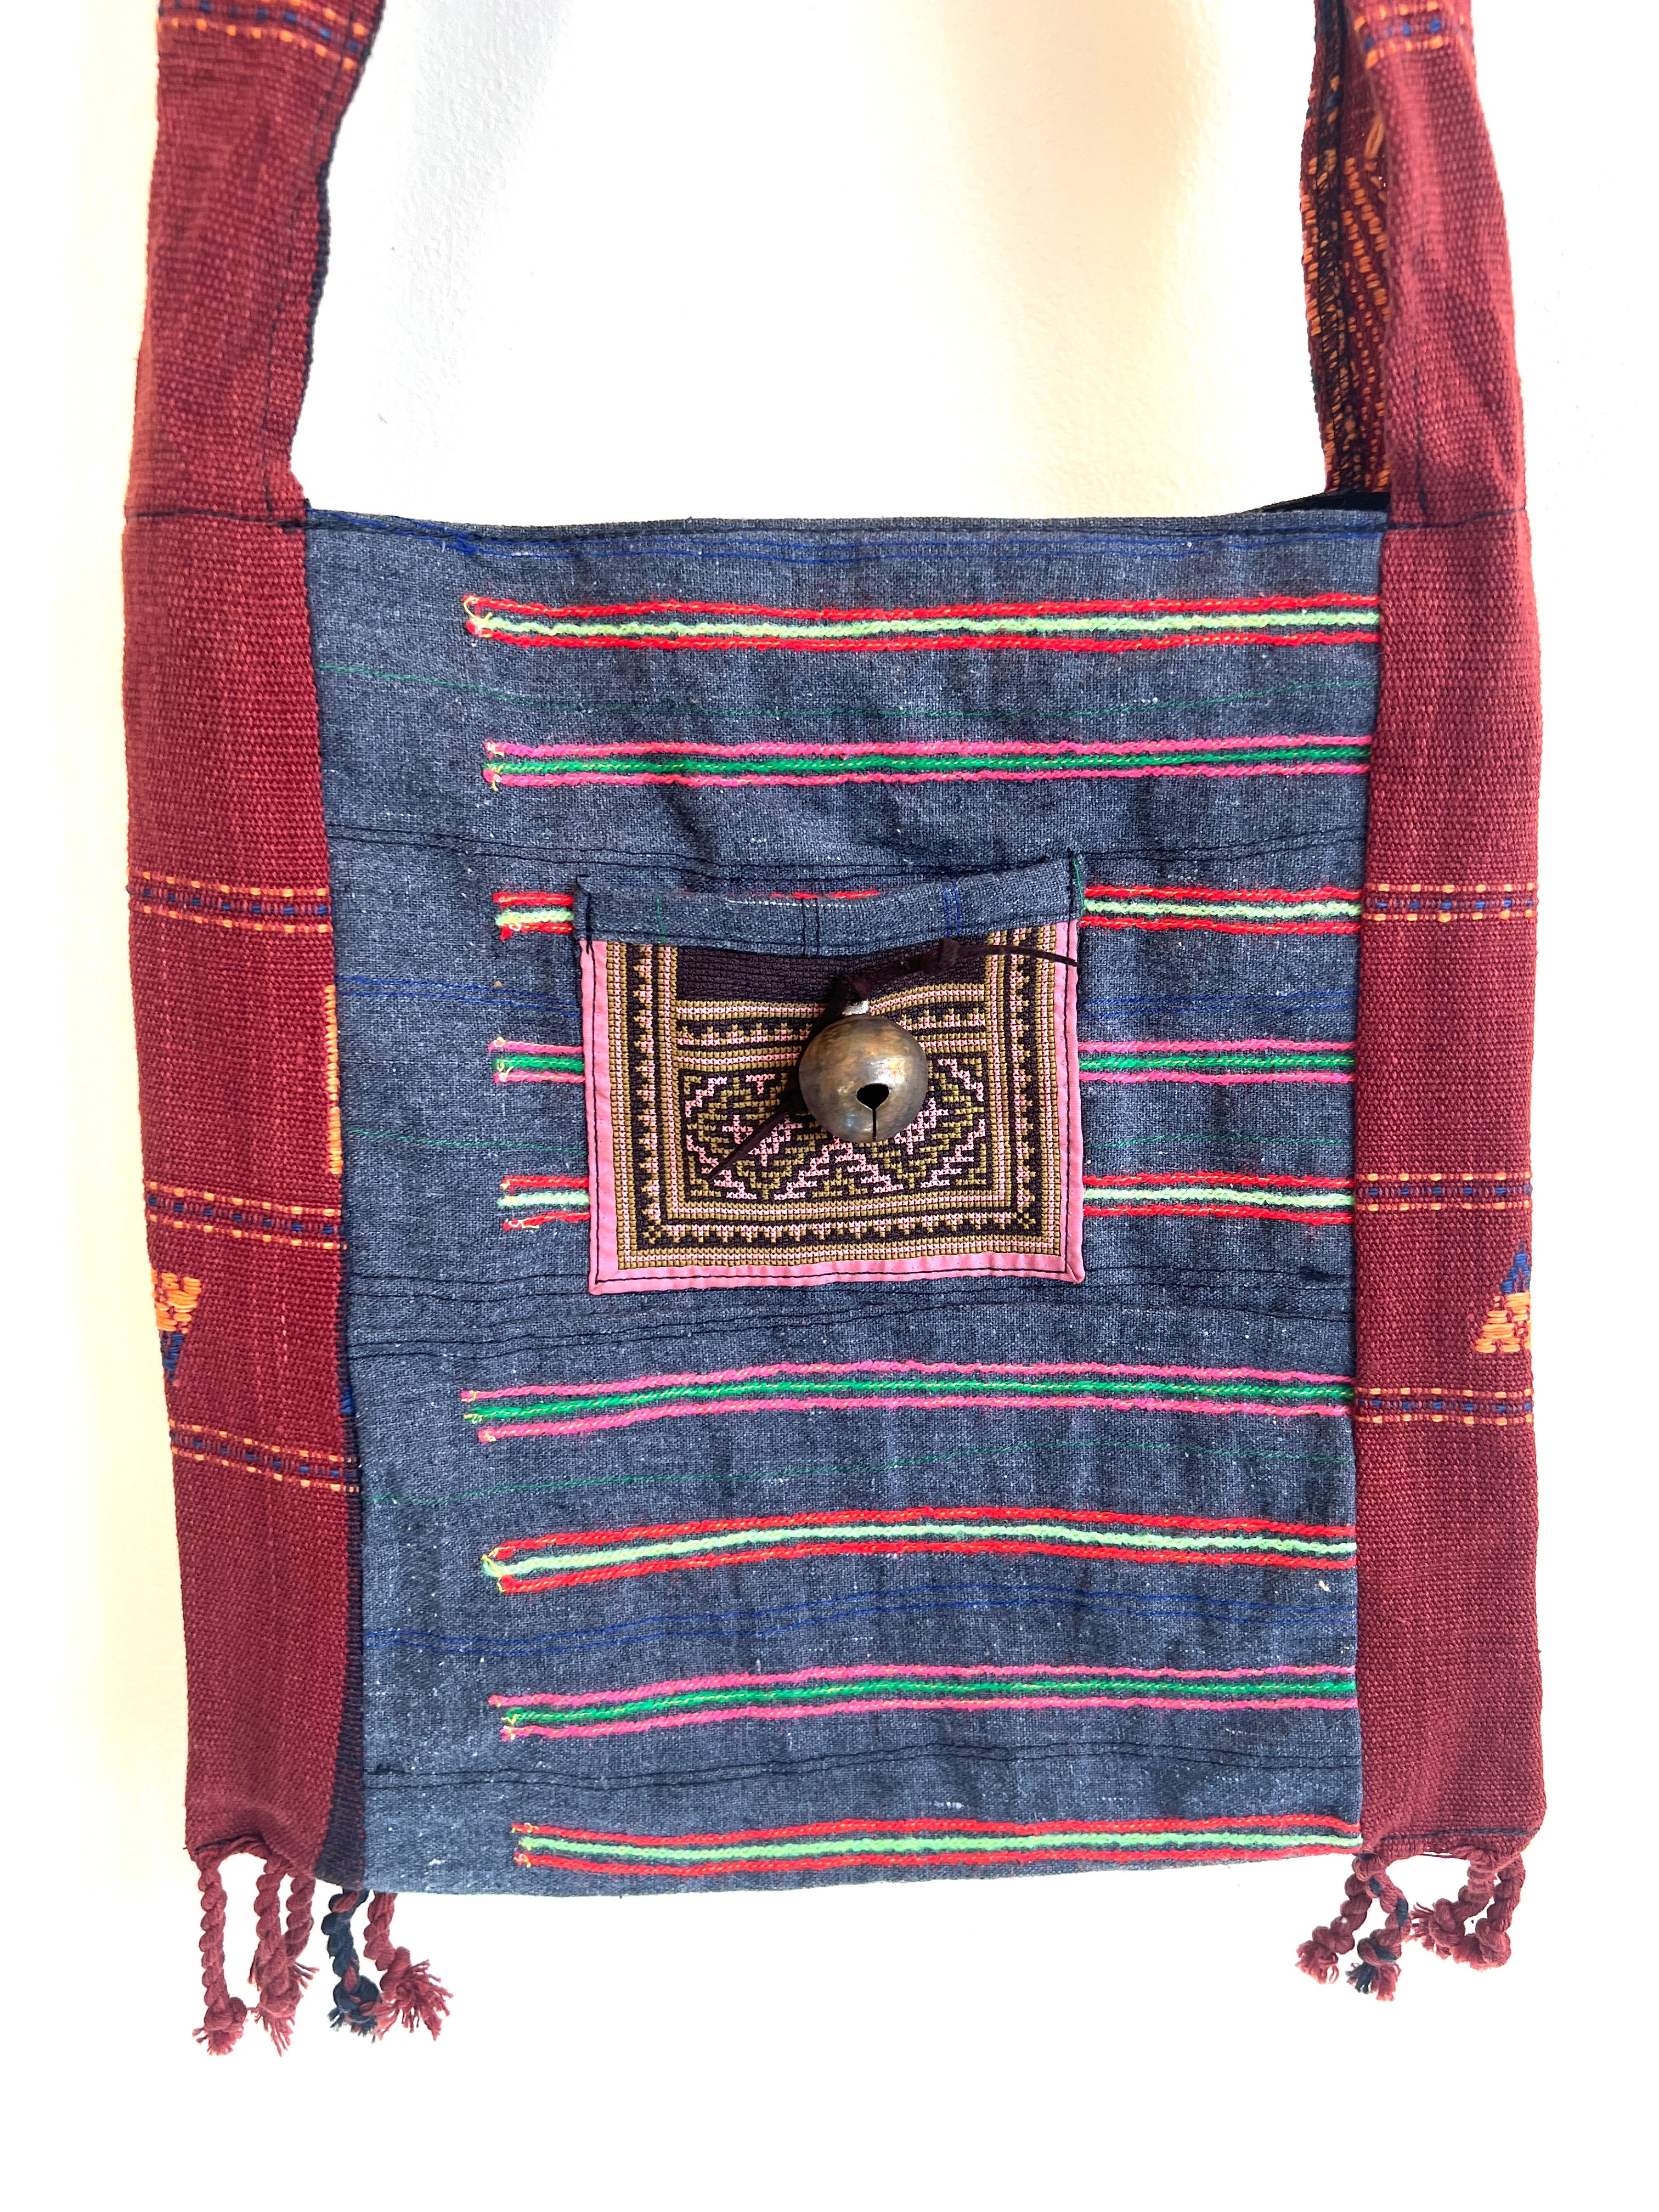 “Mekong” #12 Vintage Fabric Sm Cross Body Bag